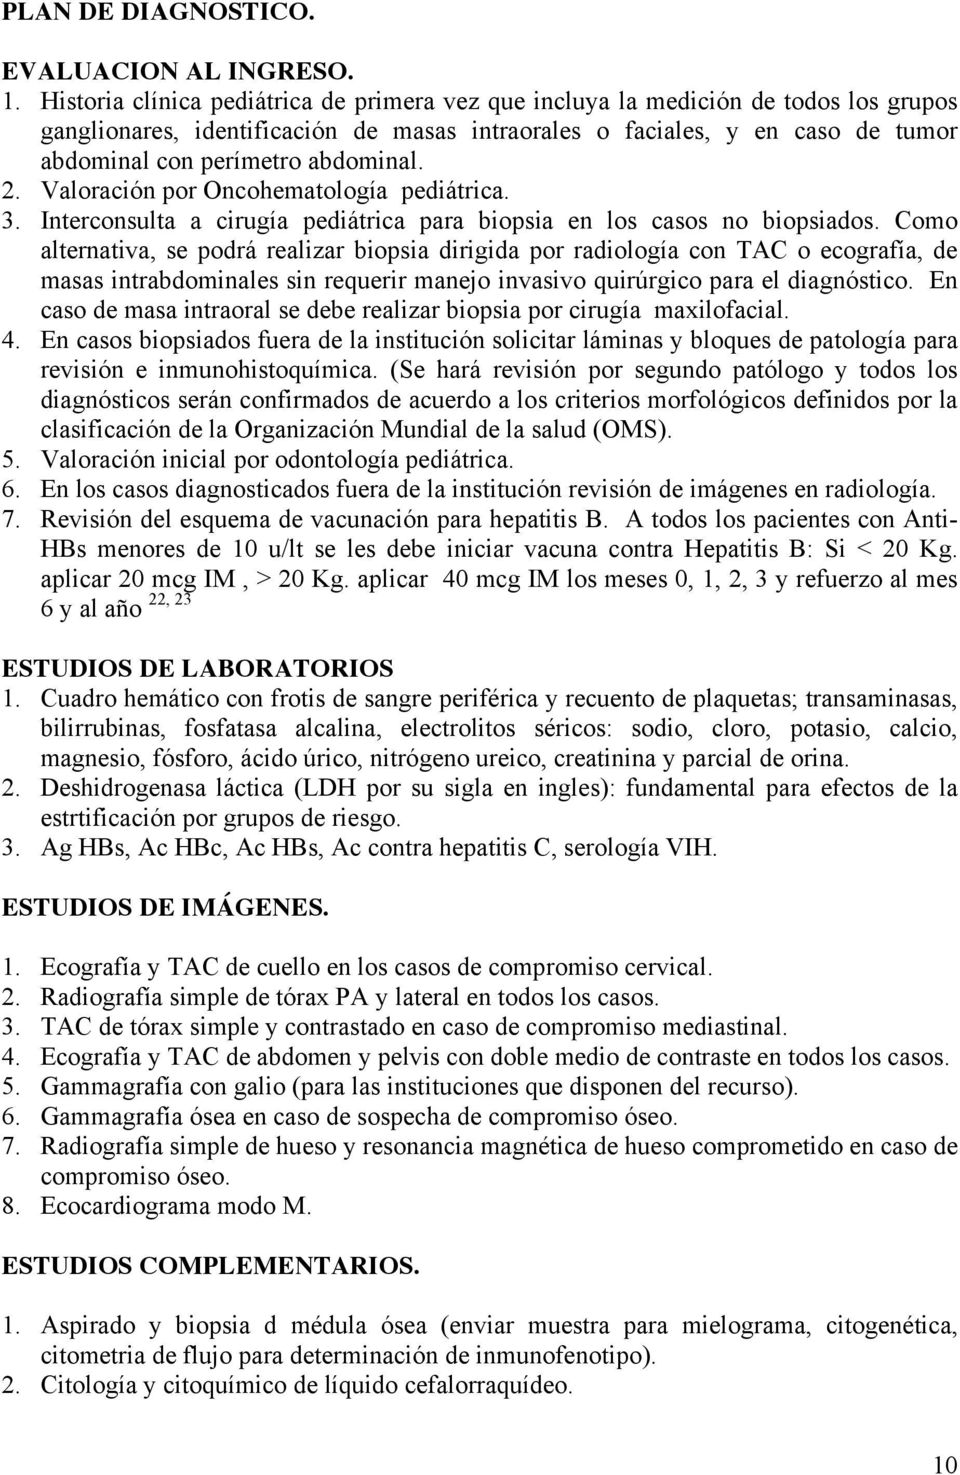 abdominal. 2. Valoración por Oncohematología pediátrica. 3. Interconsulta a cirugía pediátrica para biopsia en los casos no biopsiados.